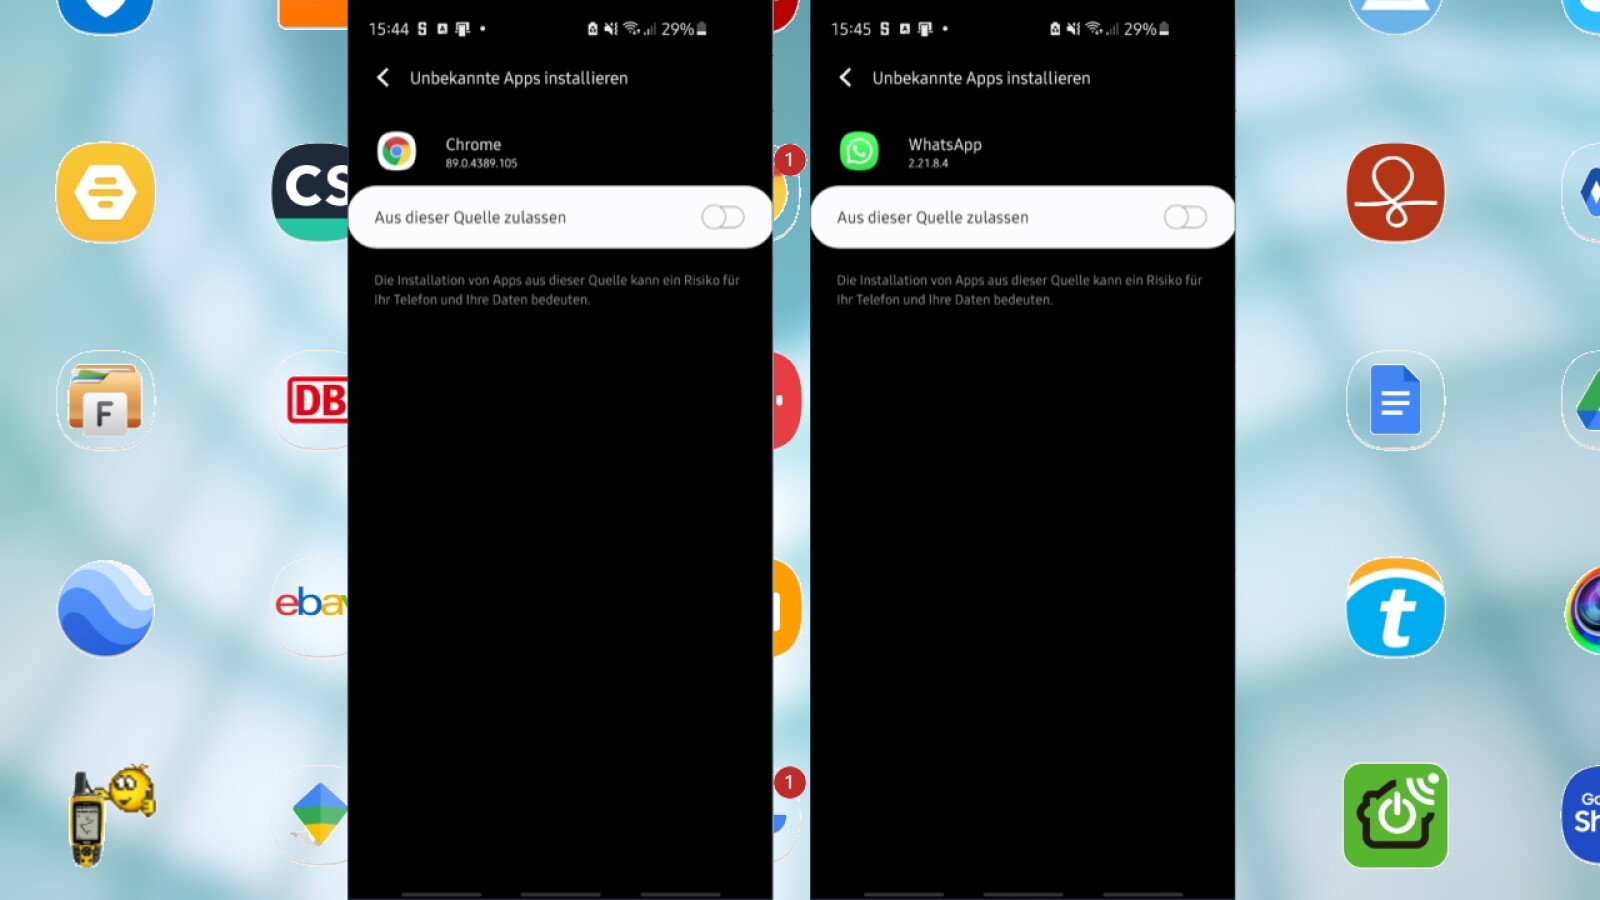 Android: Installation aus unbekannten Quellen erlauben oder unterbinden